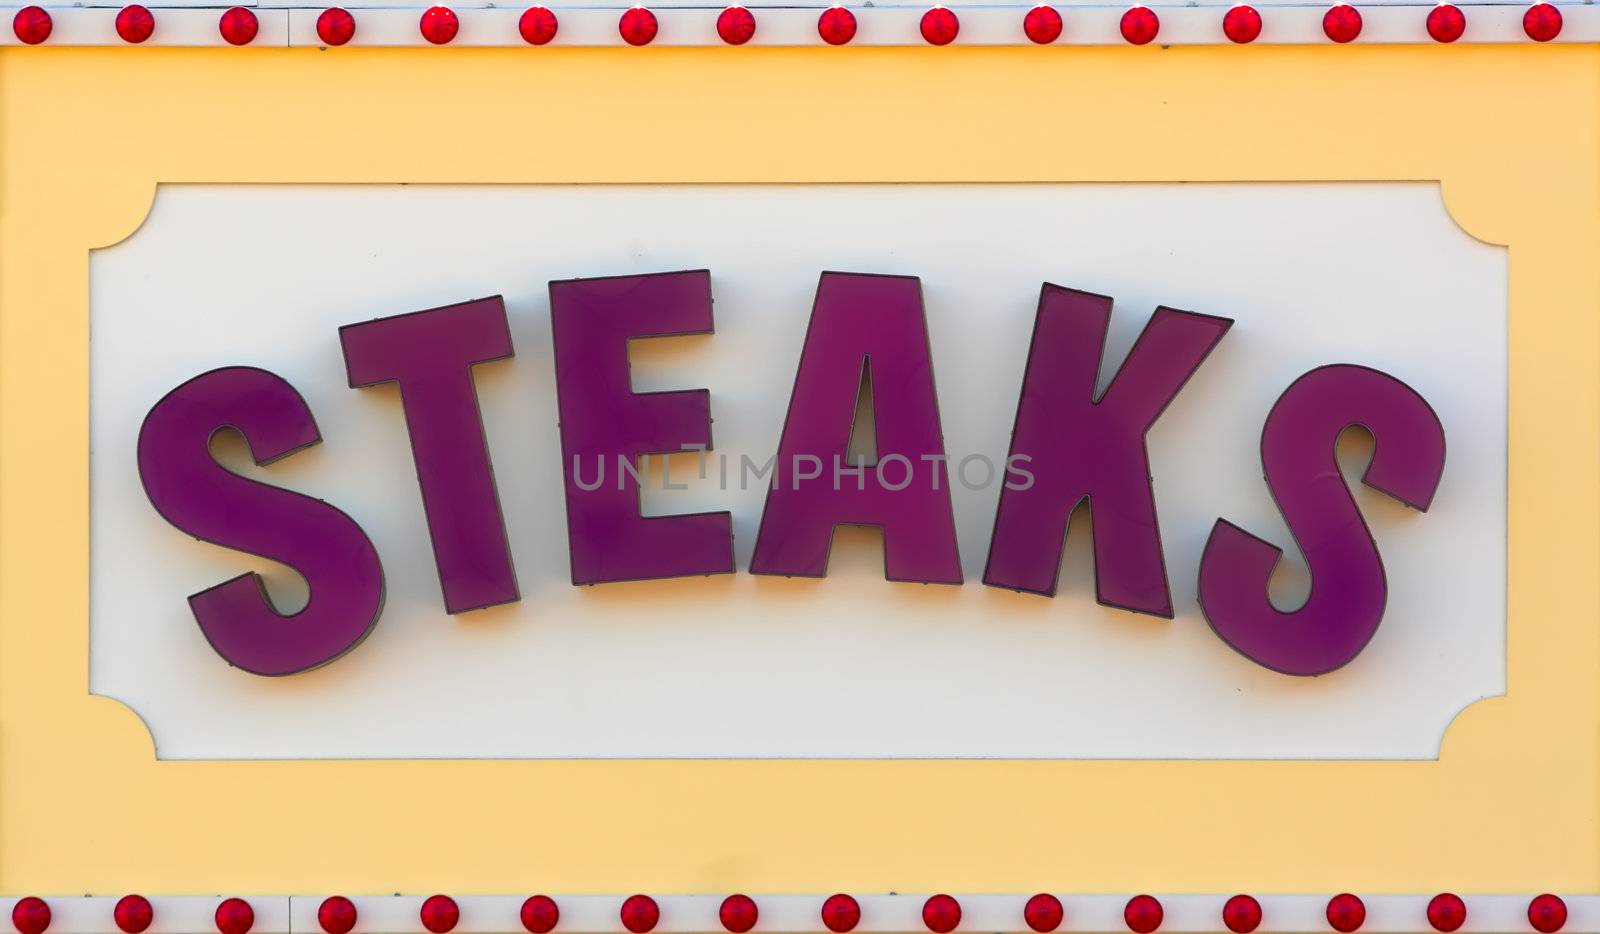 Steaks Sign by sbonk